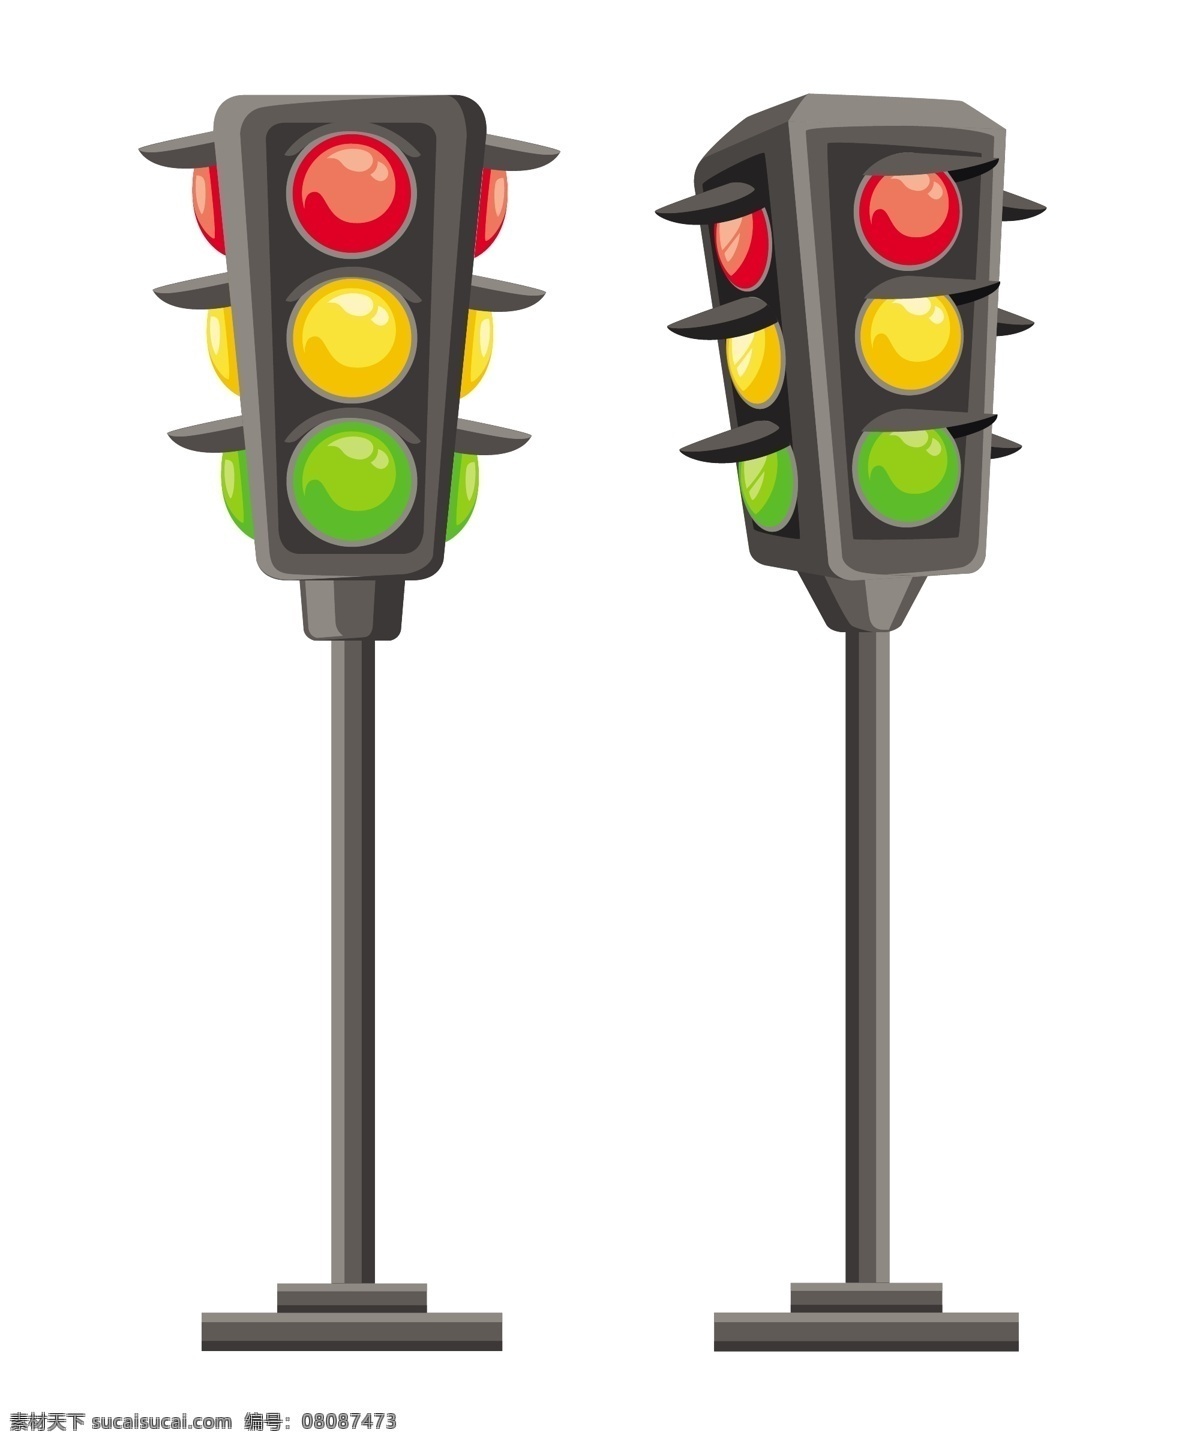 卡通 红绿灯 交通 指示灯 矢量 标志图标 公共标识标志